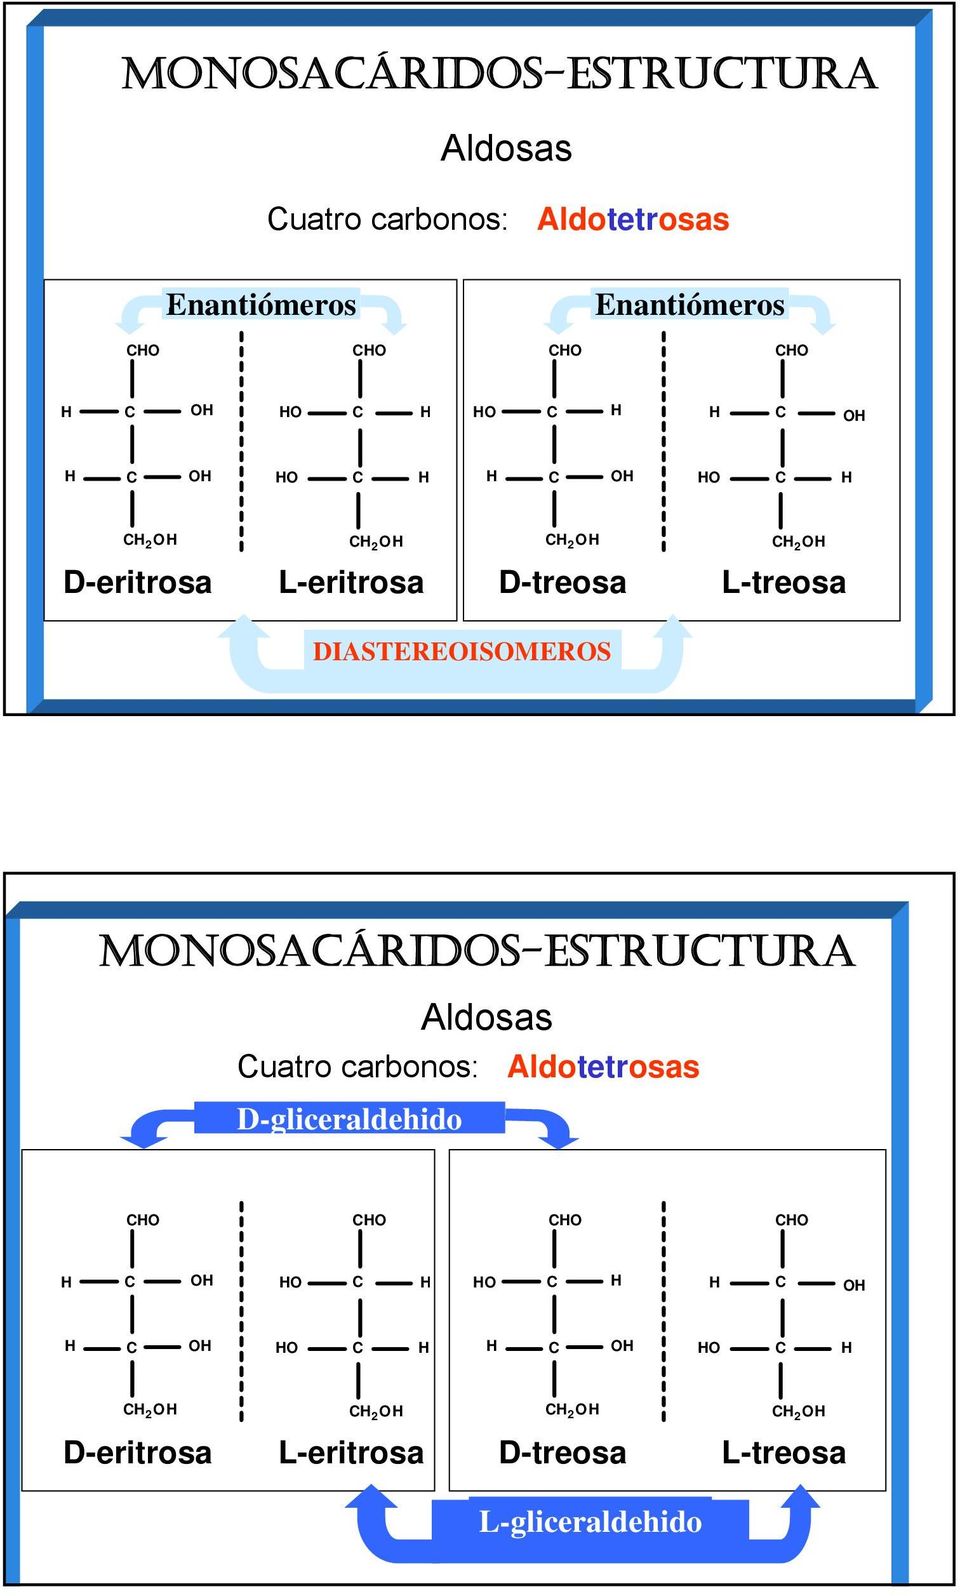 DIASTEREISMERS MNSAÁRIDS-ESTRUTURA Aldosas uatro carbonos: